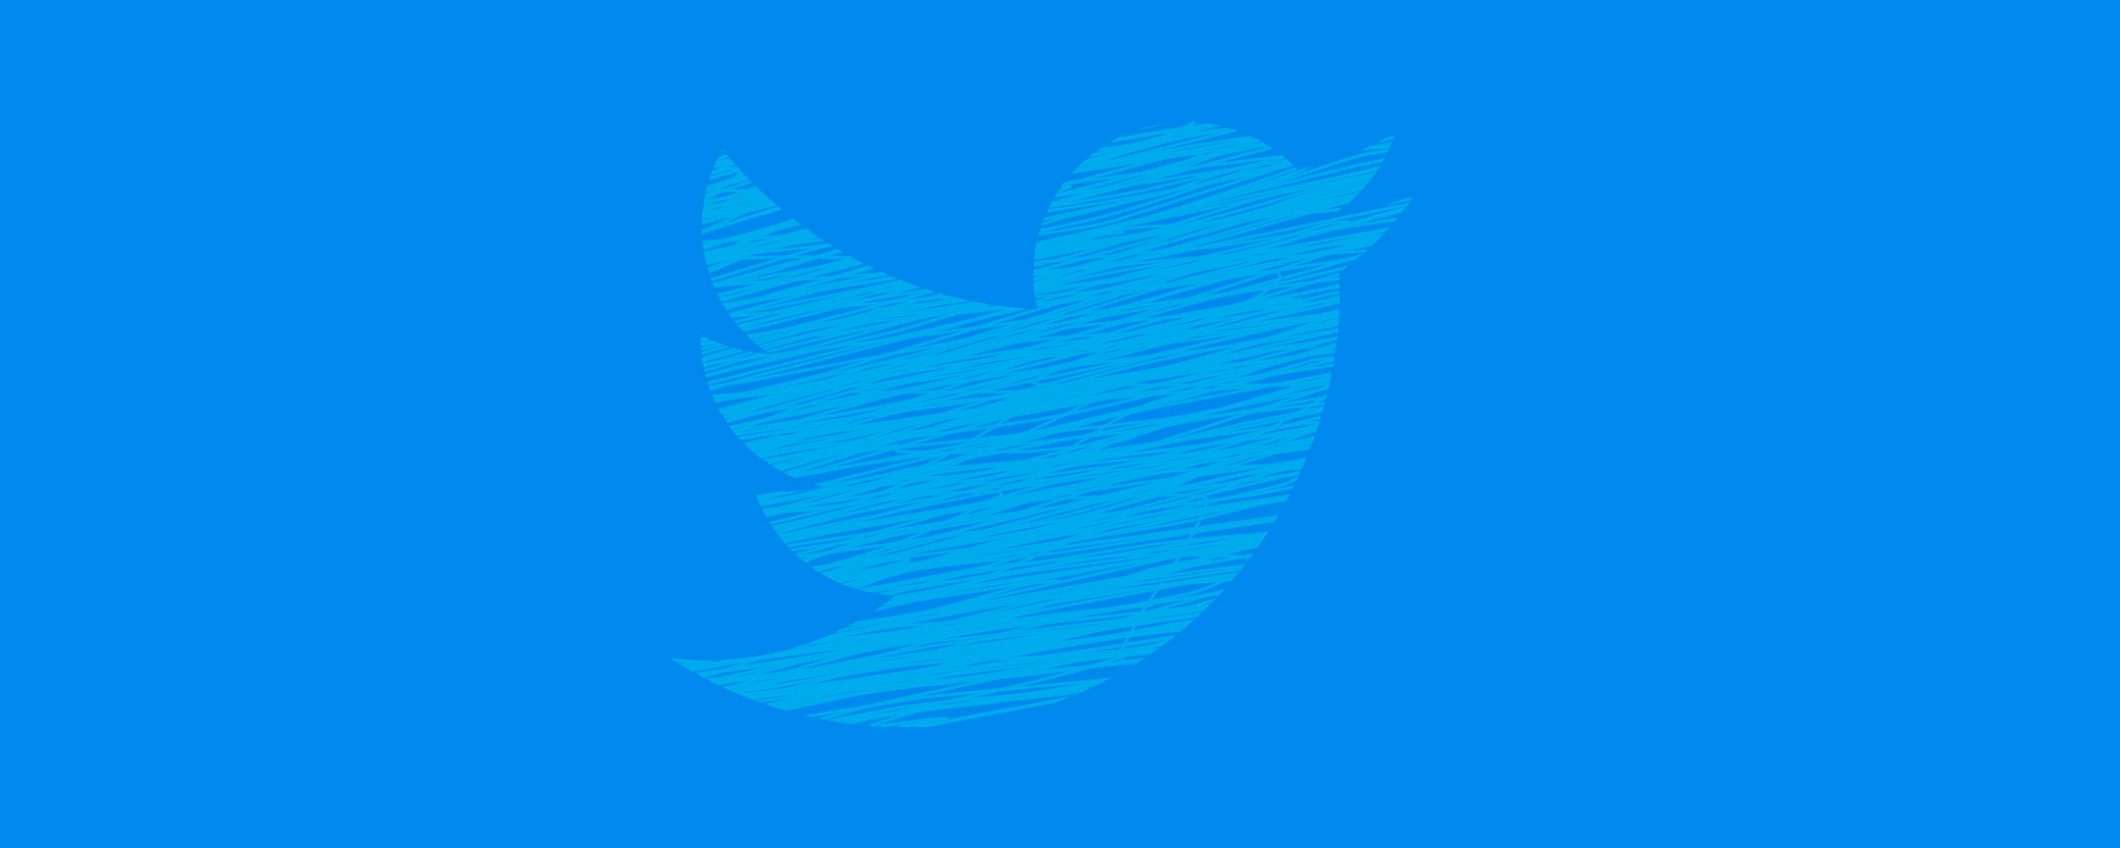 Twitter e politica: l'algoritmo premia la destra